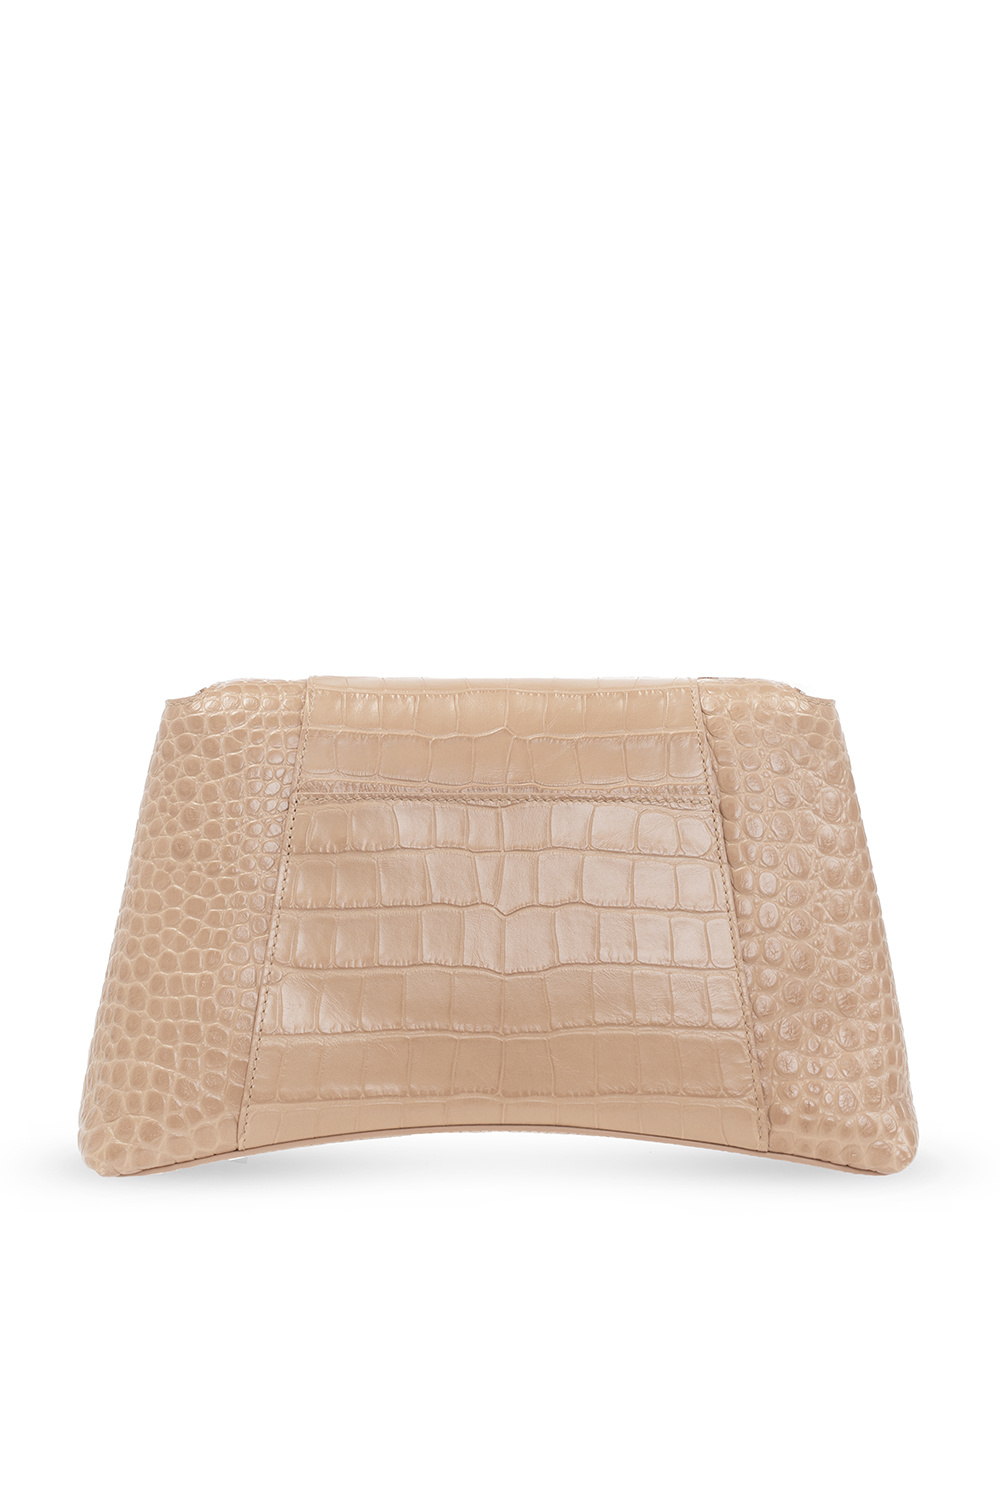 Balenciaga ‘Treize XS’ shoulder bag